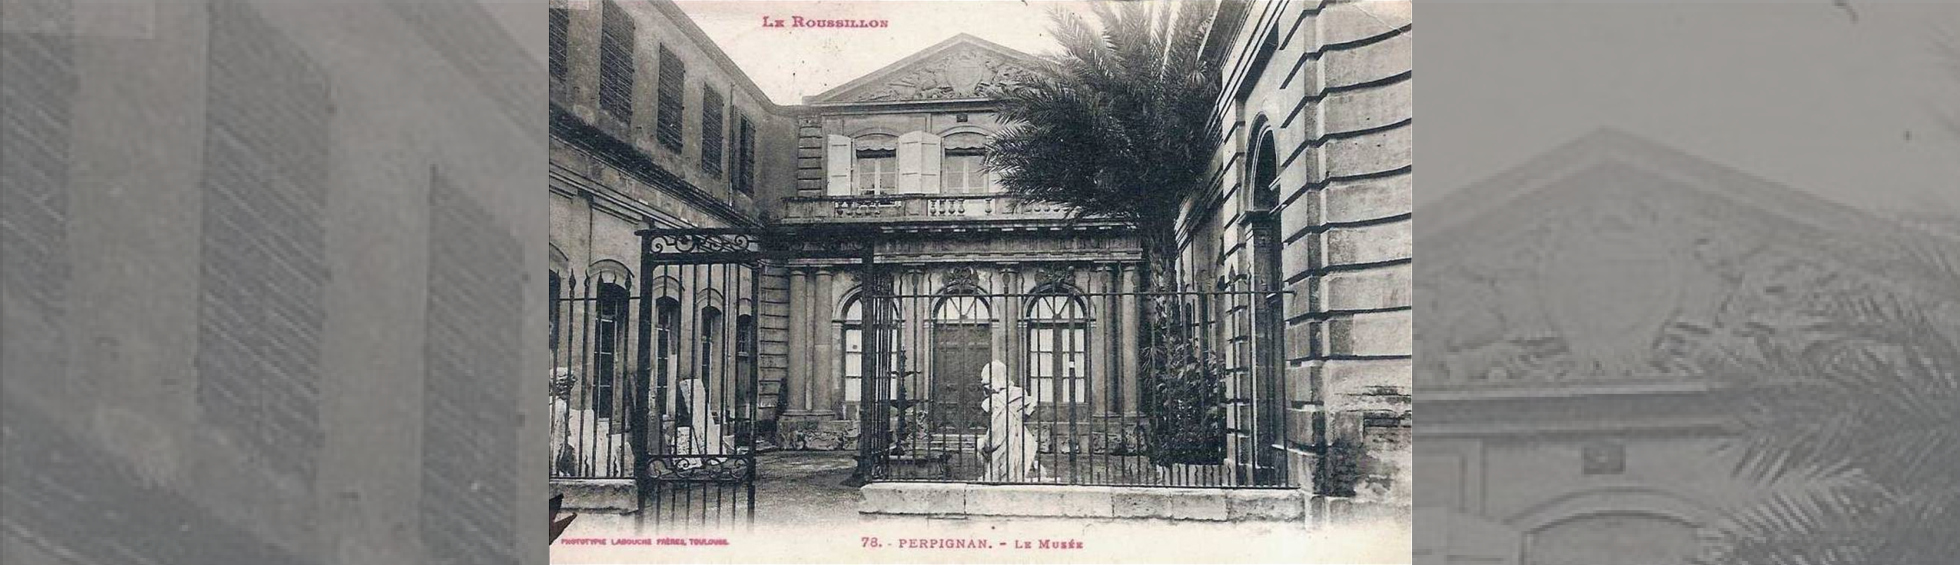 Photo ancienne de la cour d'entrée avec des pièces de lapidaires exposées .A l'époque les façades étaient enduites.